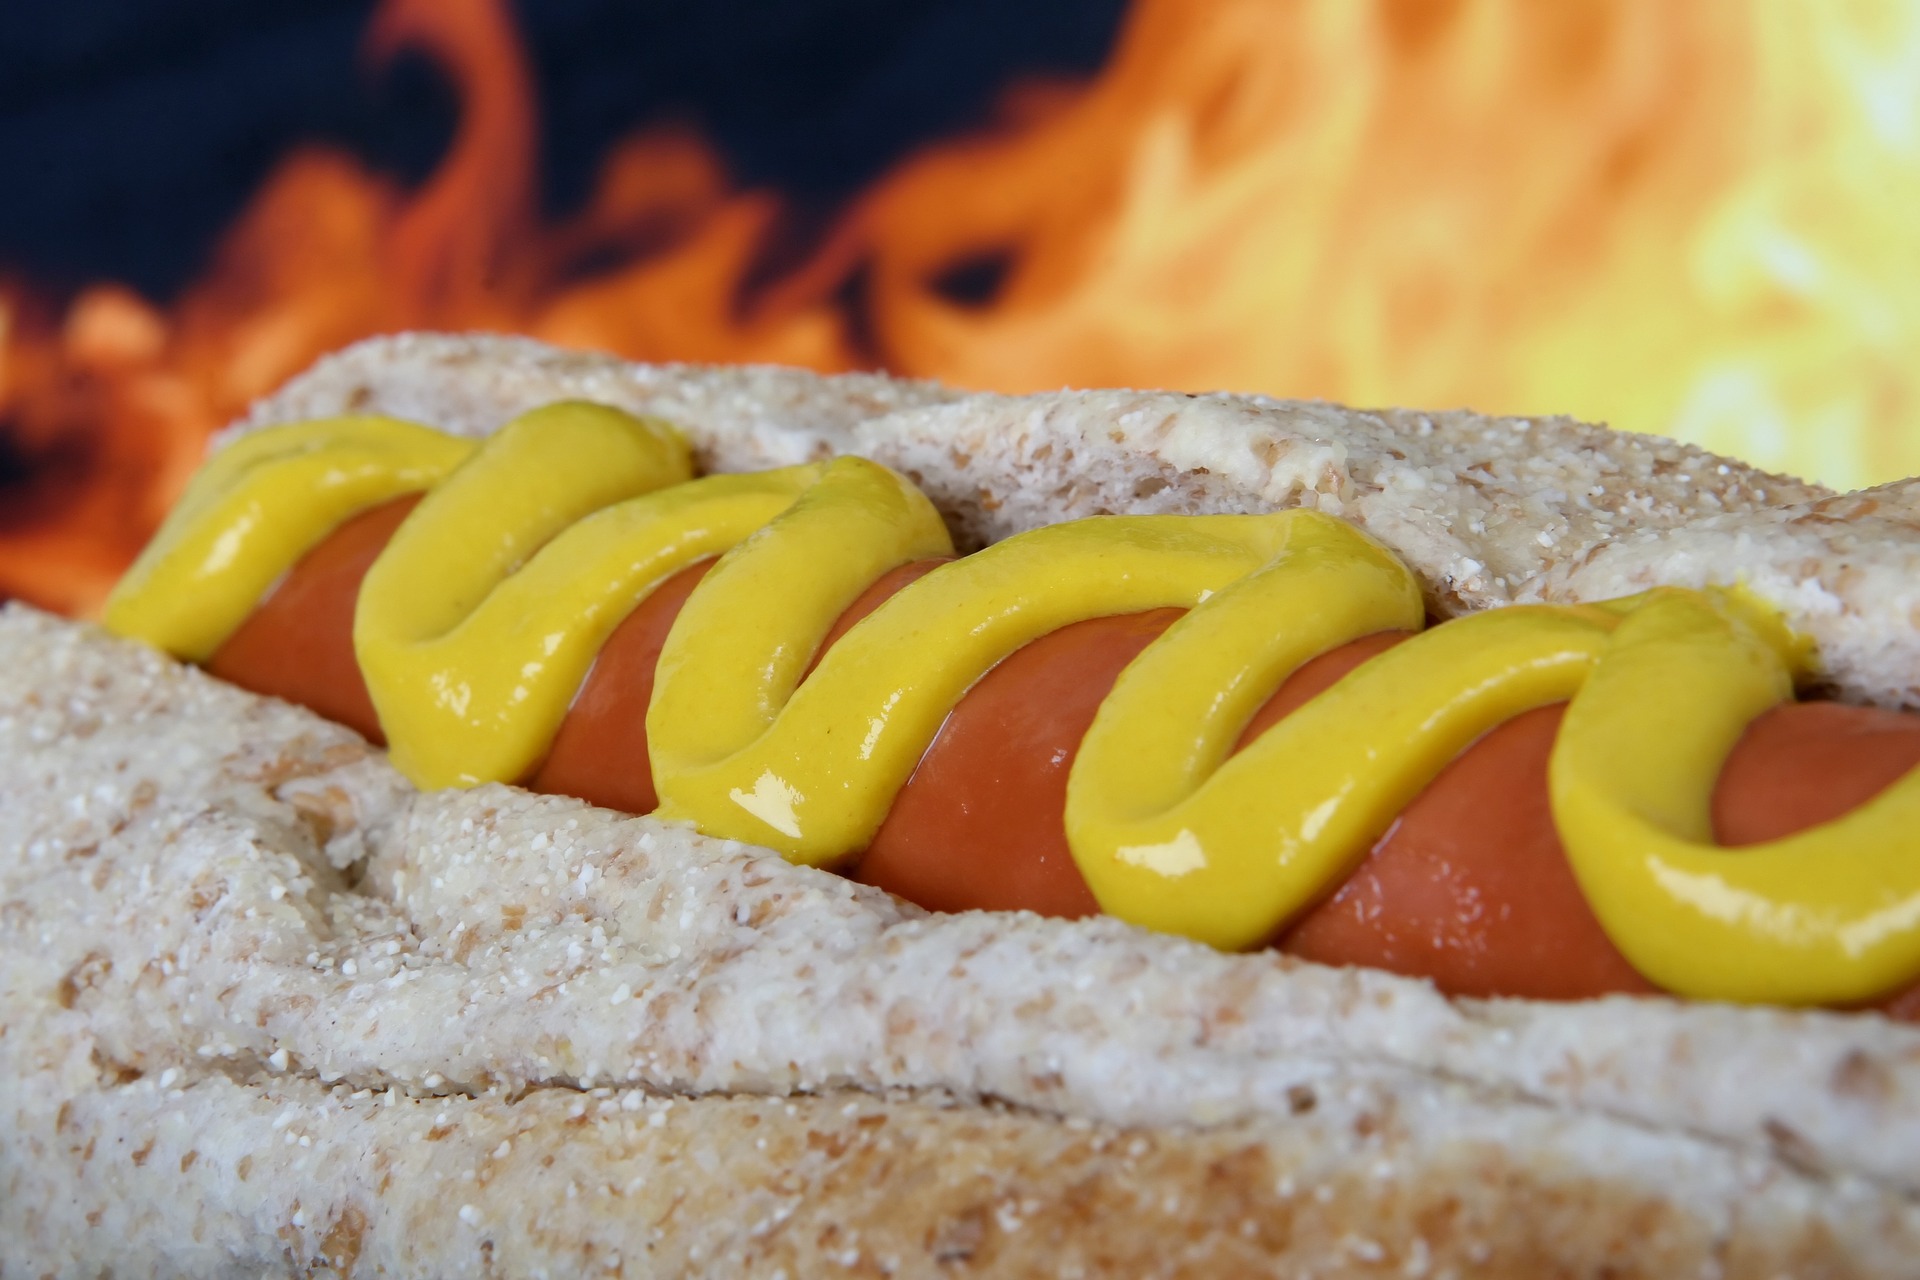 Hotdogwedstrijd